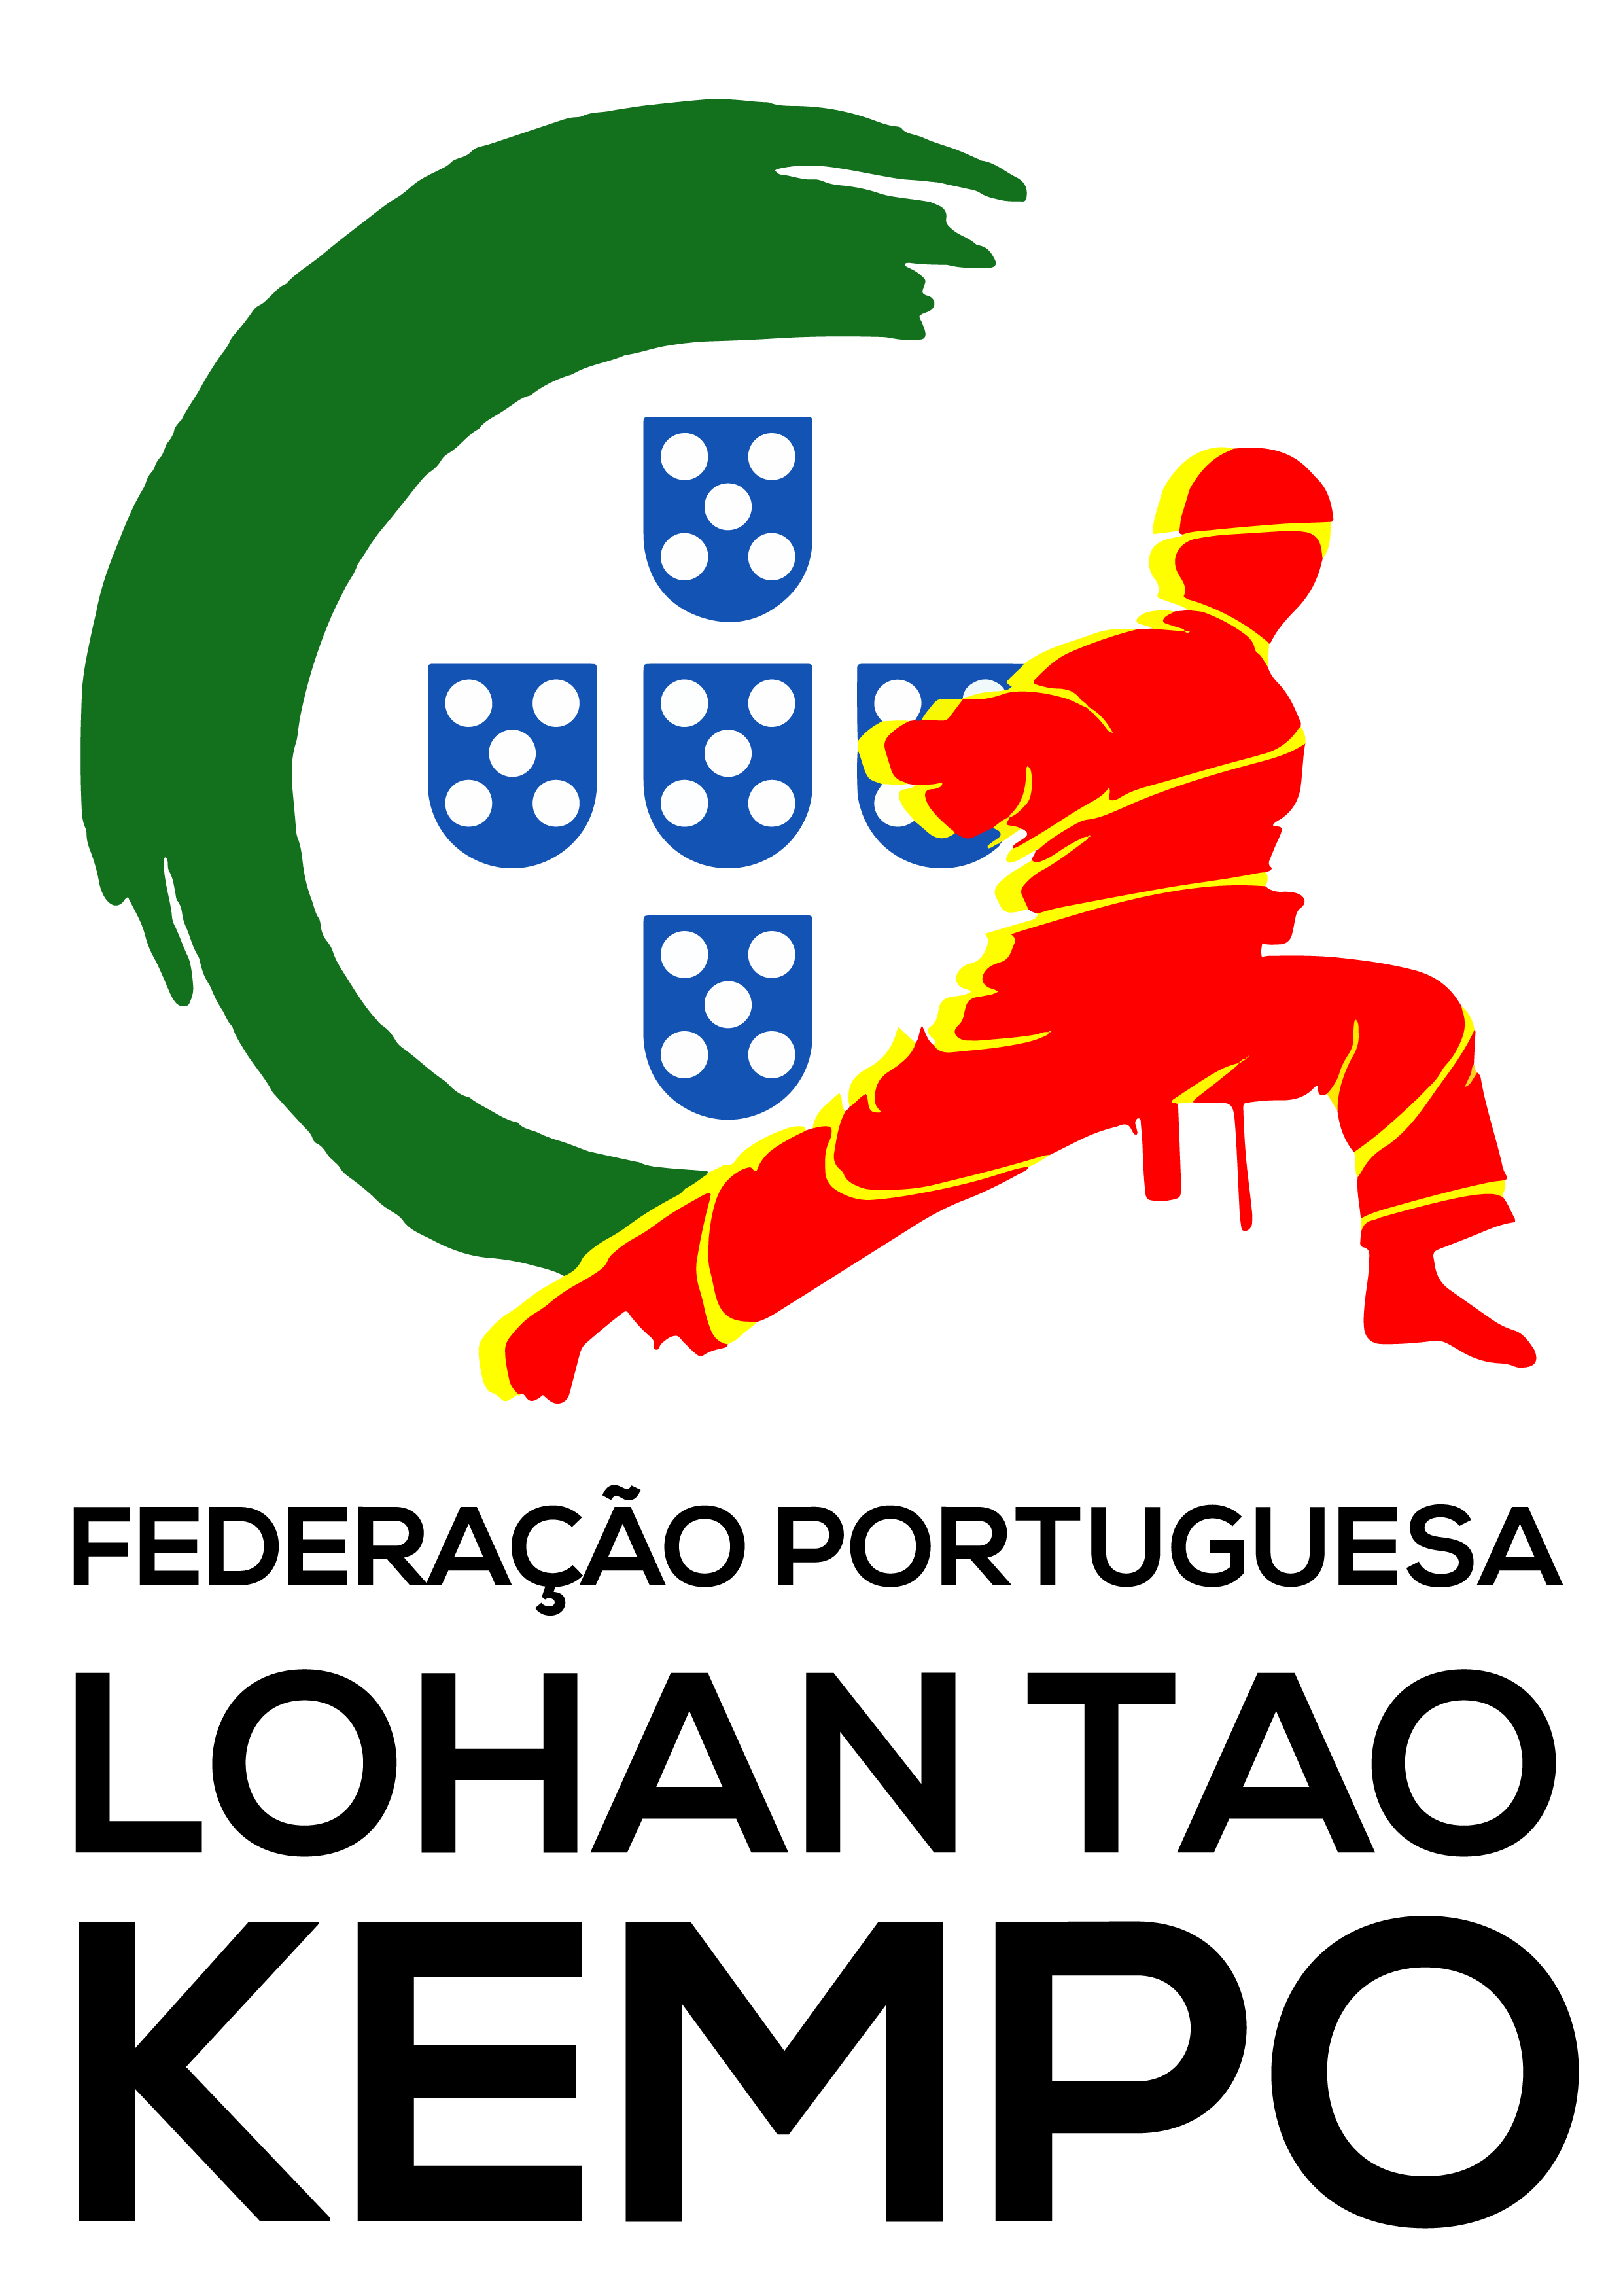 Federação Portuguesa de Lohan Tao Kempo